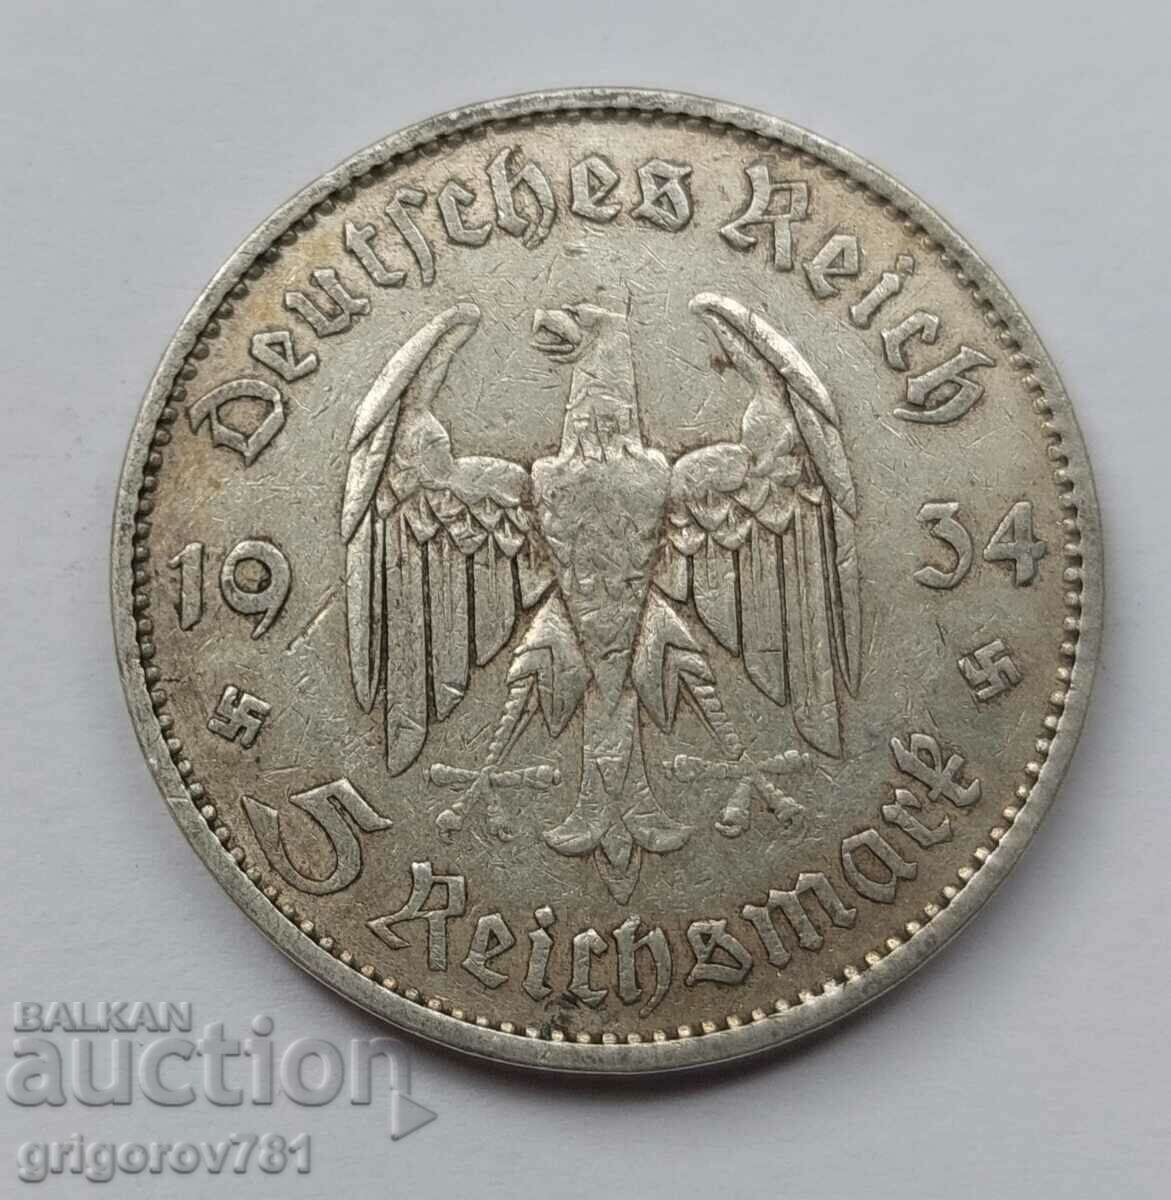 5 mărci de argint Germania 1934 A III Reich Monedă de argint #6